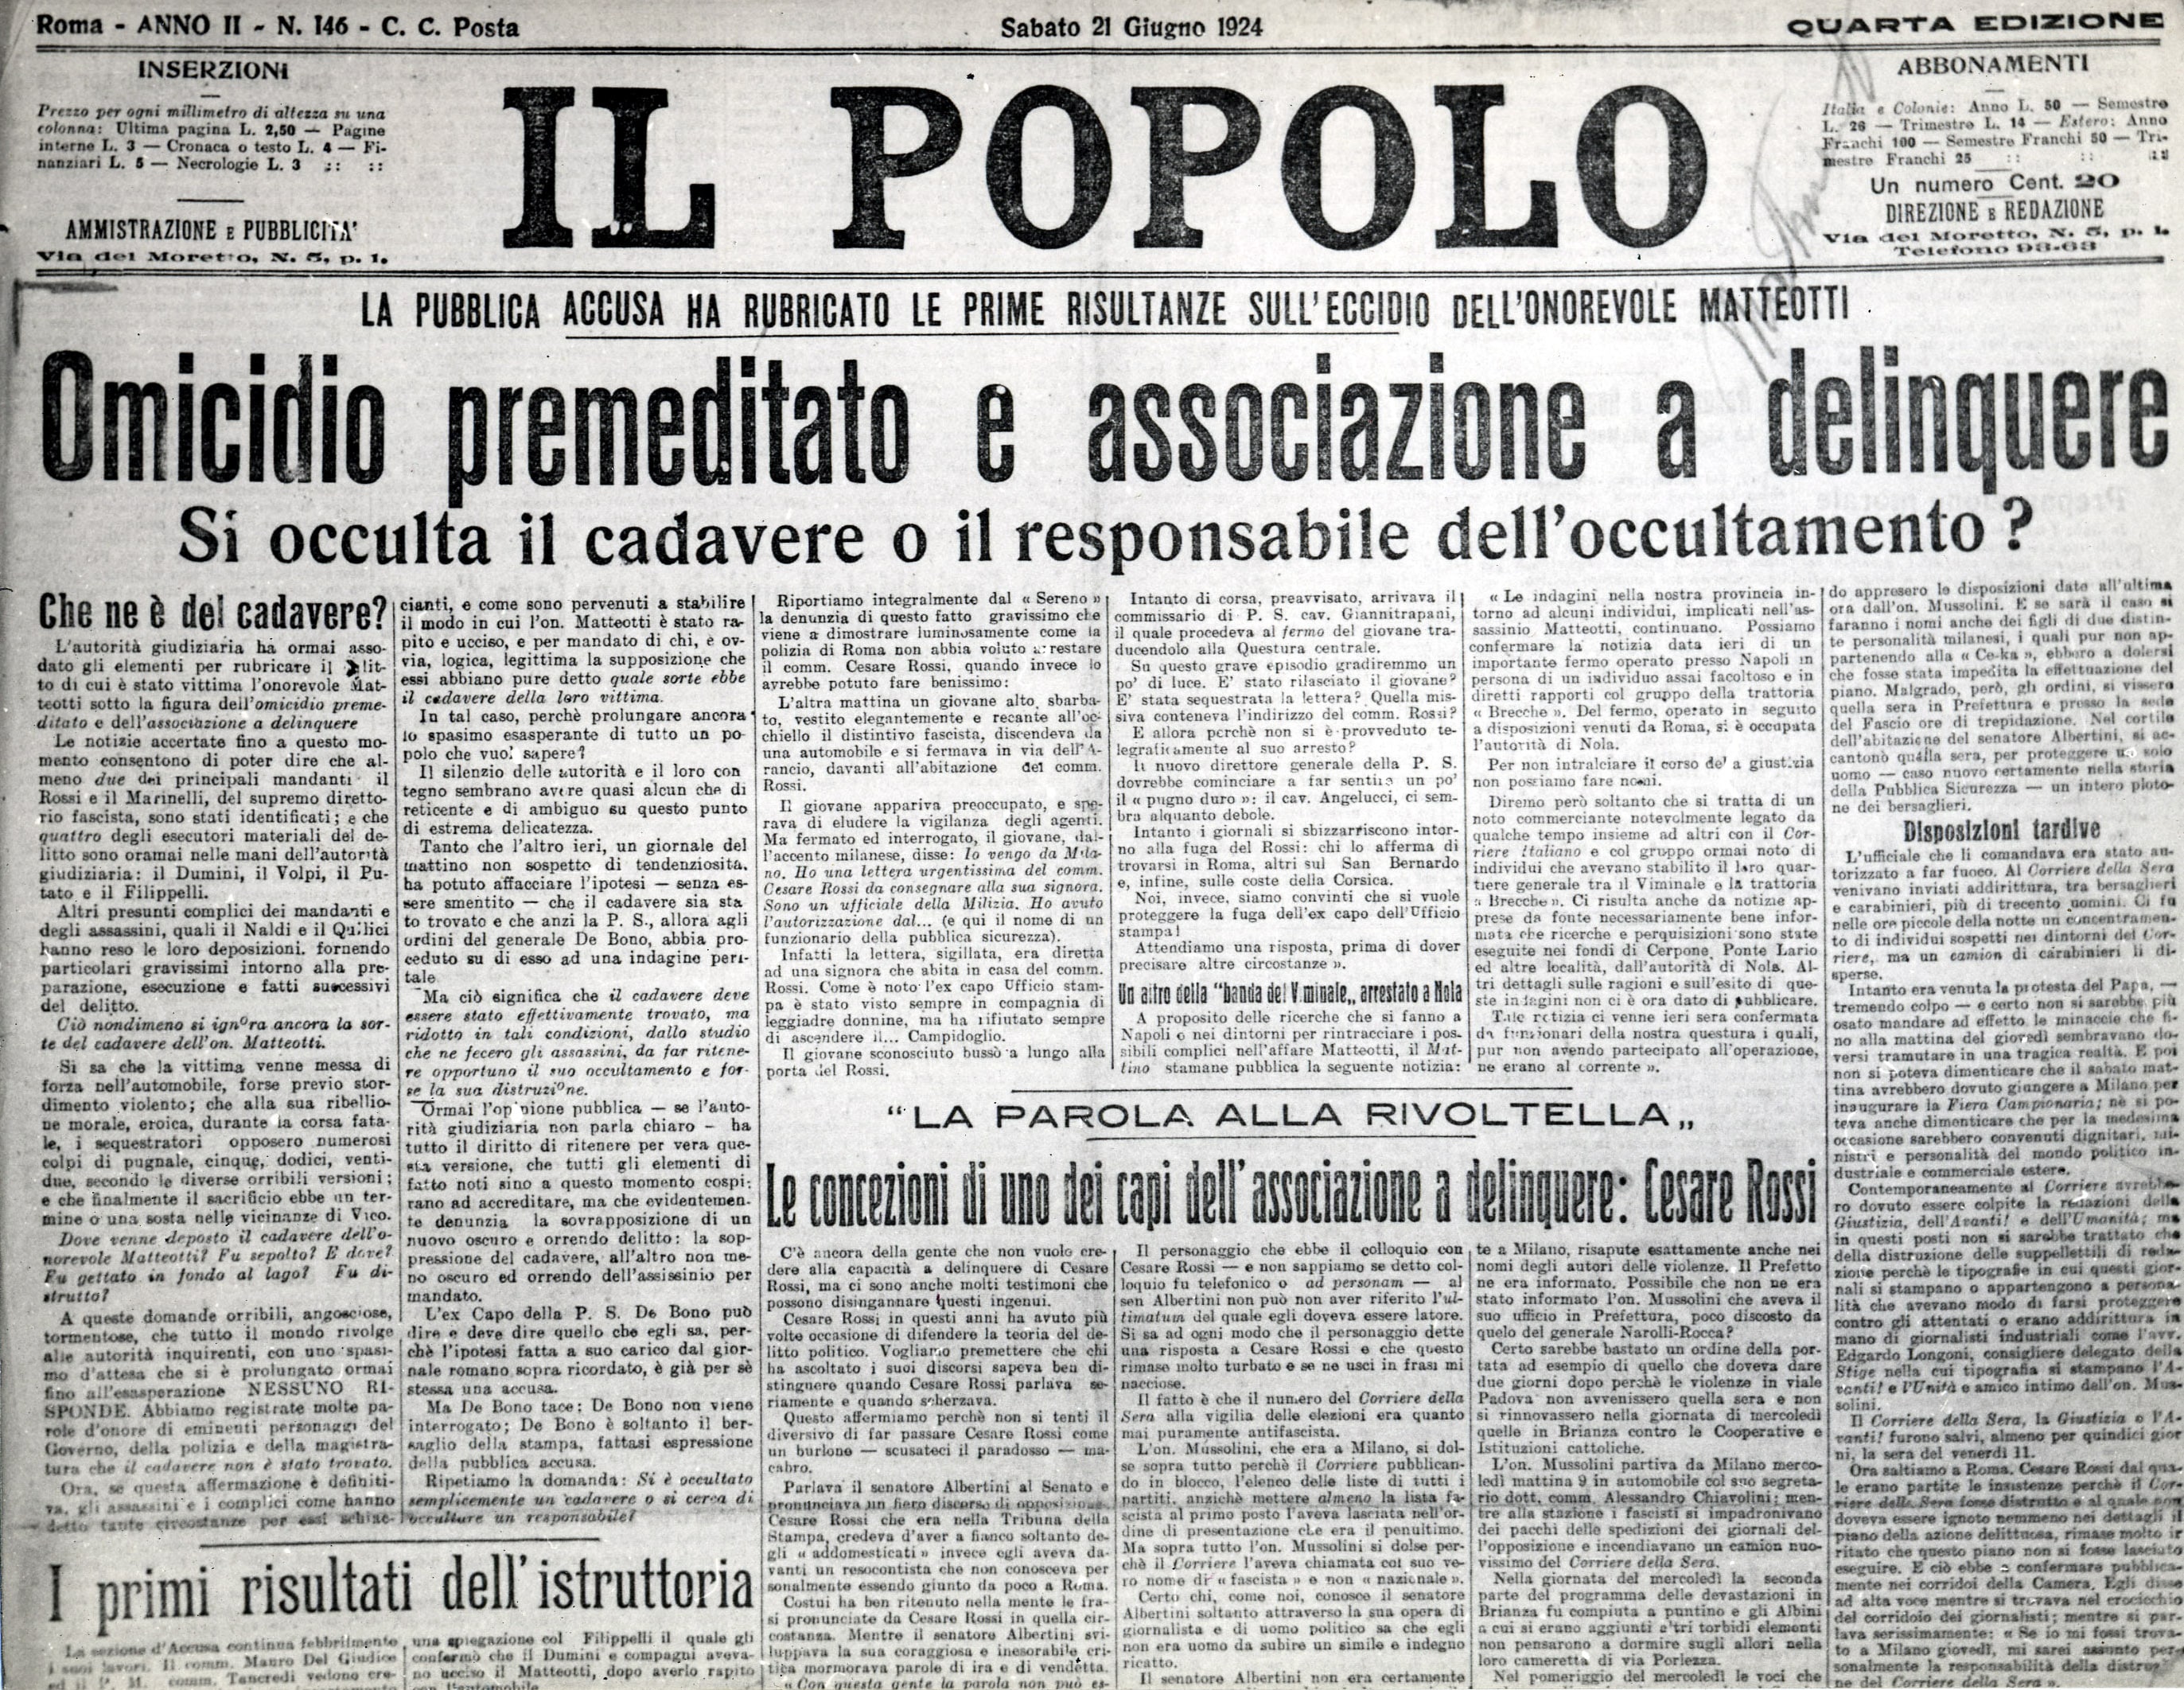 La prima pagina del quotidiano Il Popolo, del 24 giugno 1924, si fanno ipotesi sul rapimento avvenuto da poco